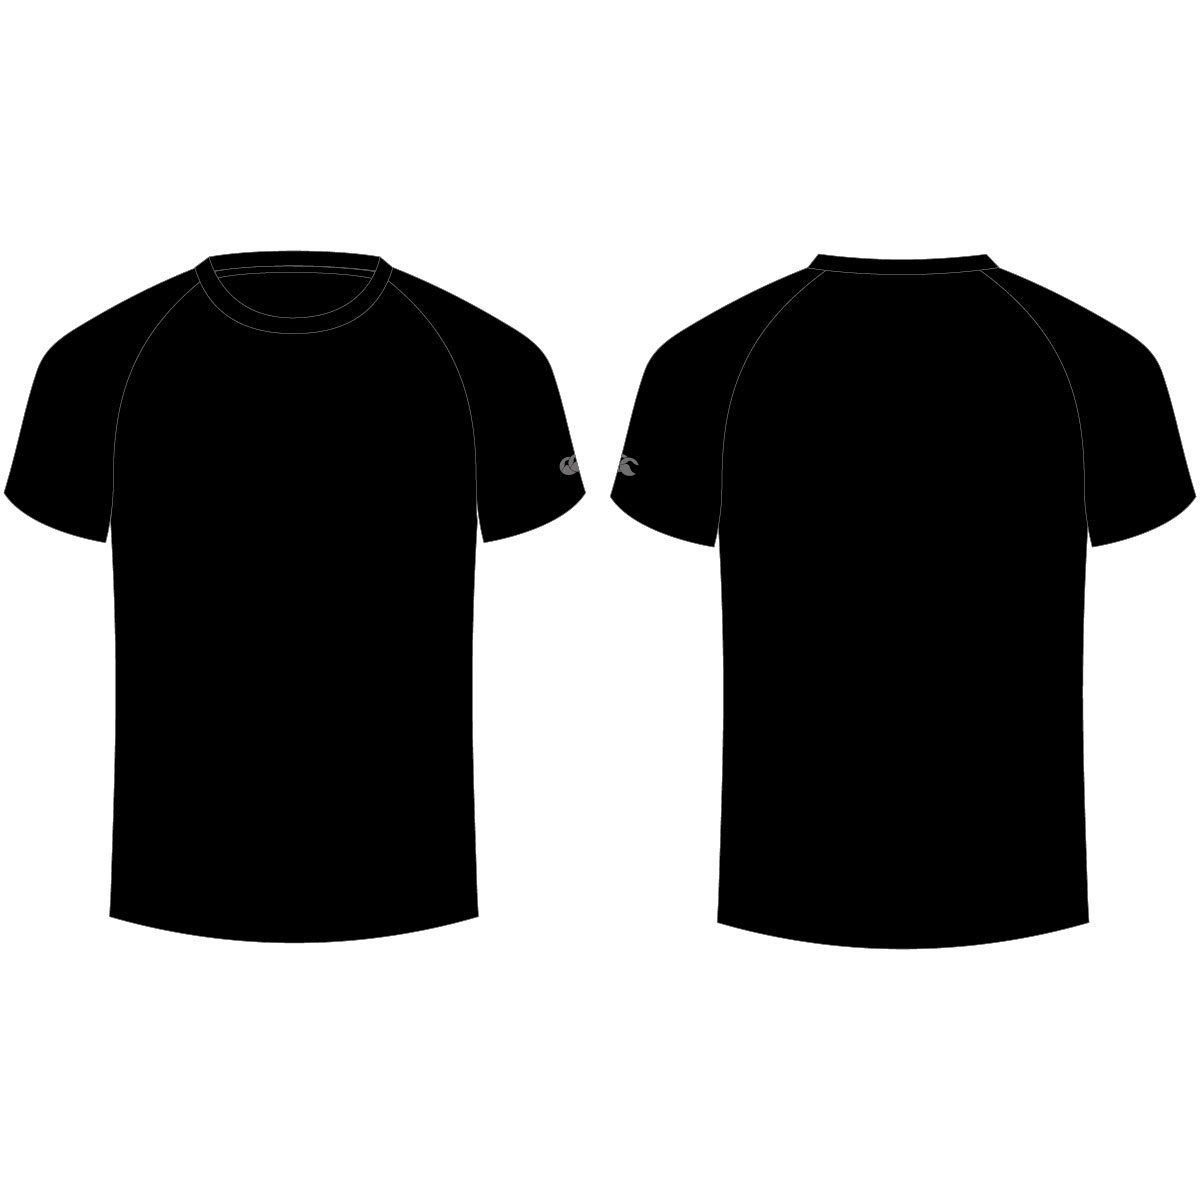 black-t-shirt-template-clipart-best